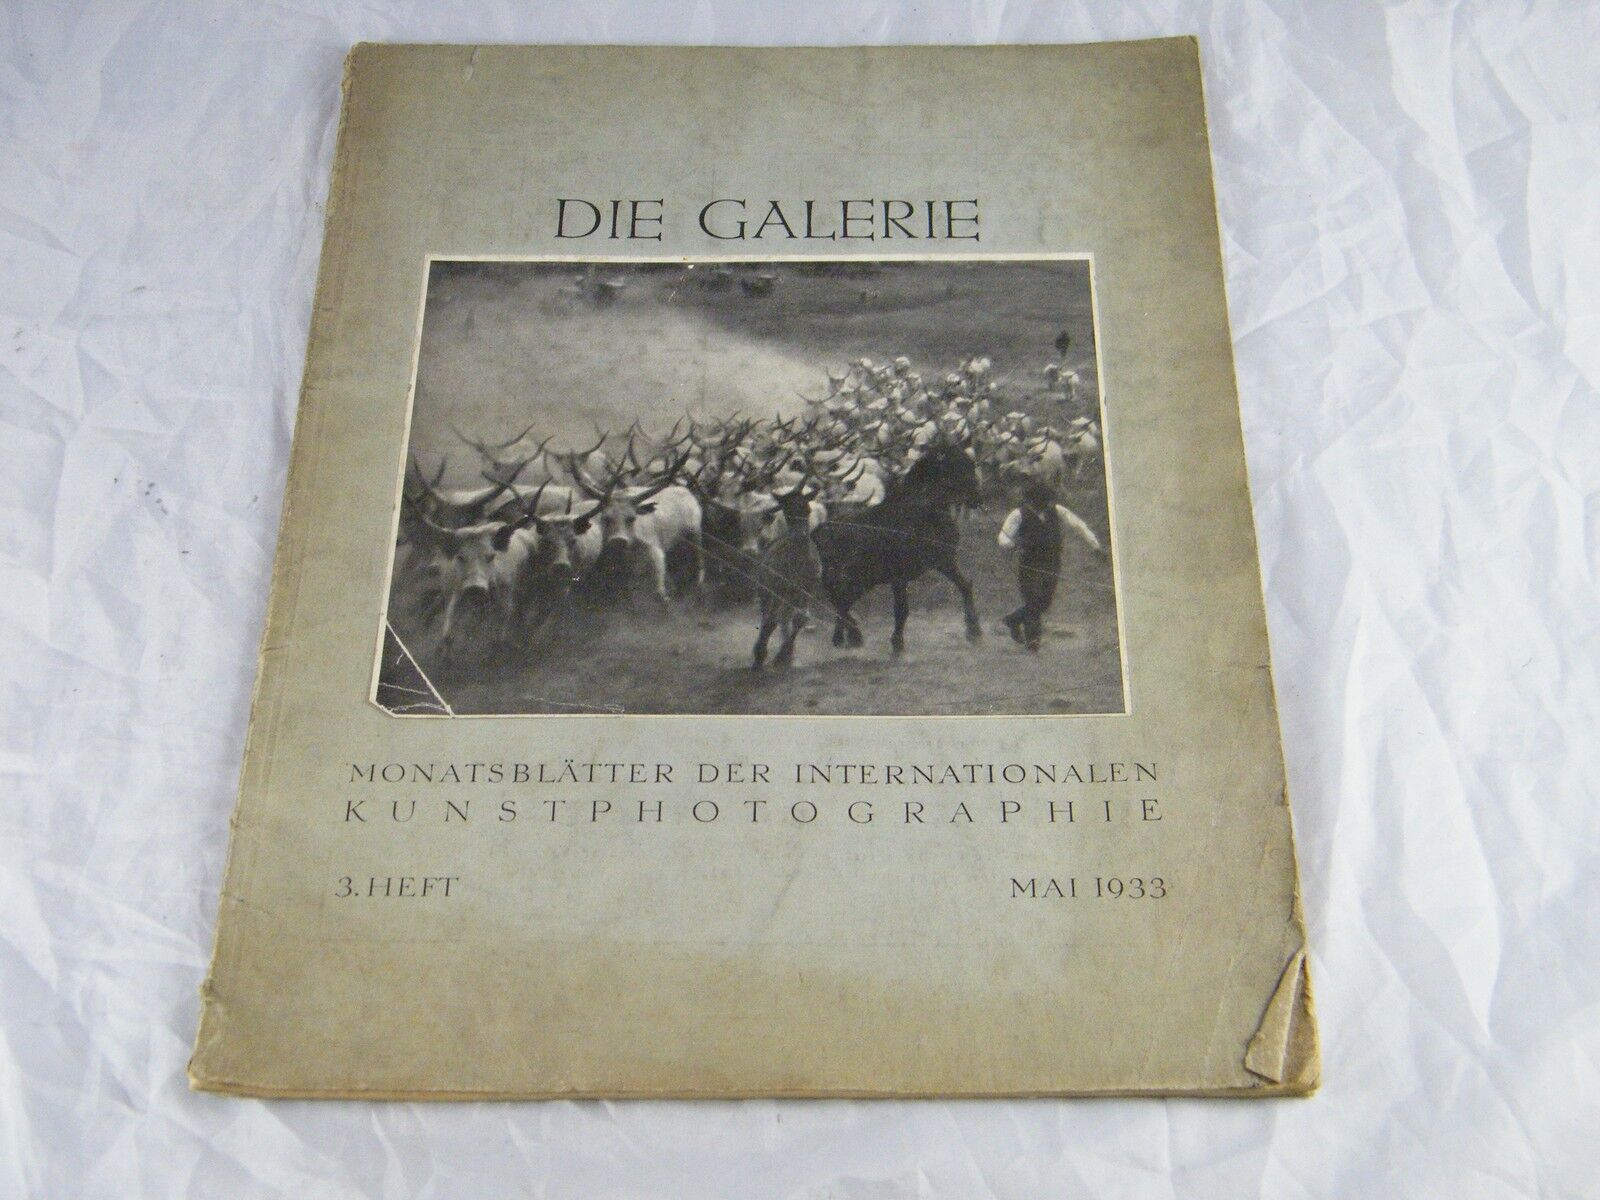 1933 DIE GALERIE MONATSBLATTER DER INTERNATIONALEN KUNSTPHOTOGRAPHIE